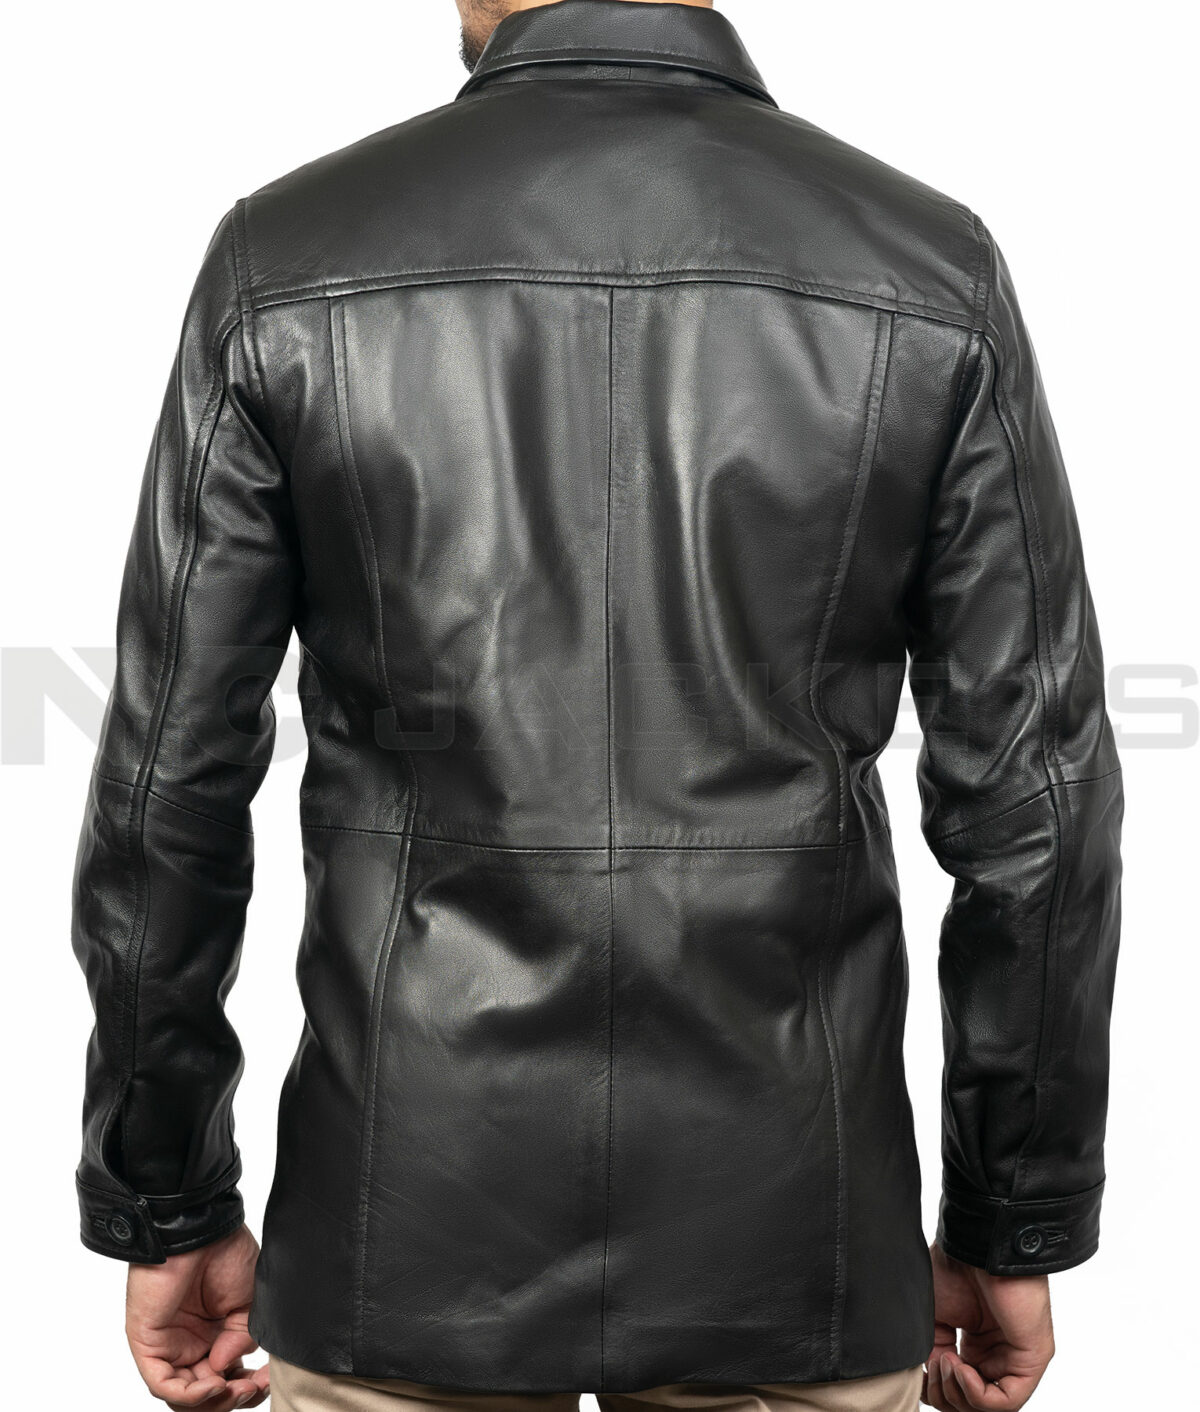 Alonzo Training Day Leather Coat